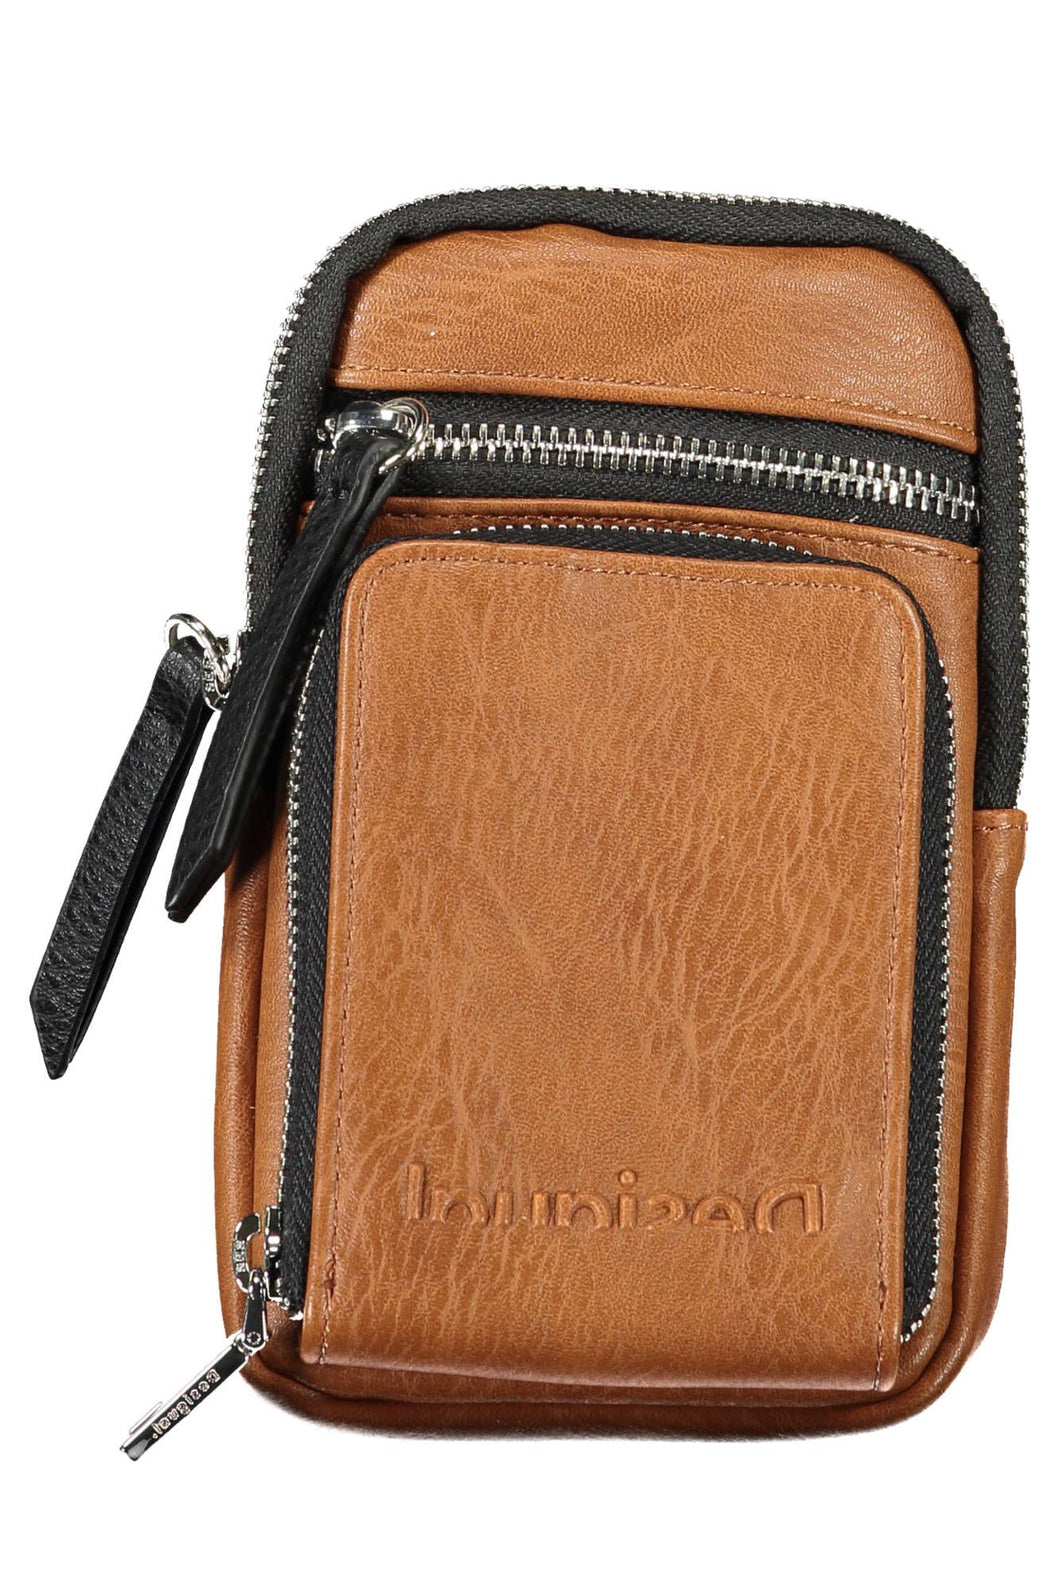 Desigual Brown Polyurethane Handbag